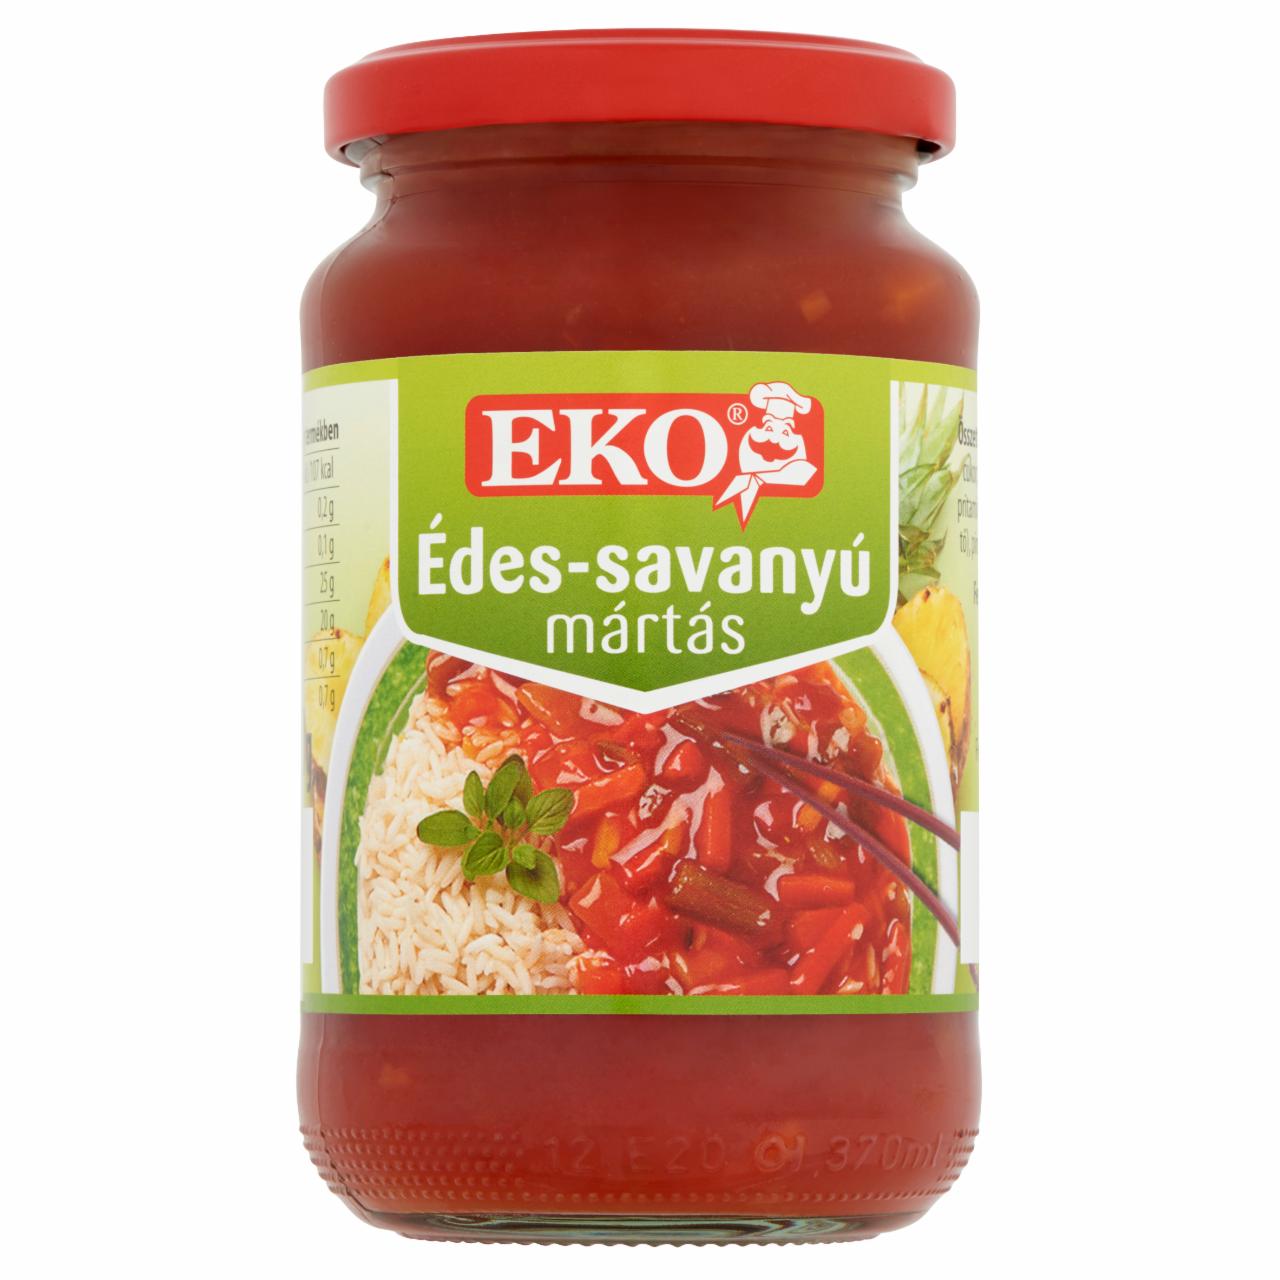 Képek - Eko édes-savanyú mártás 360 g